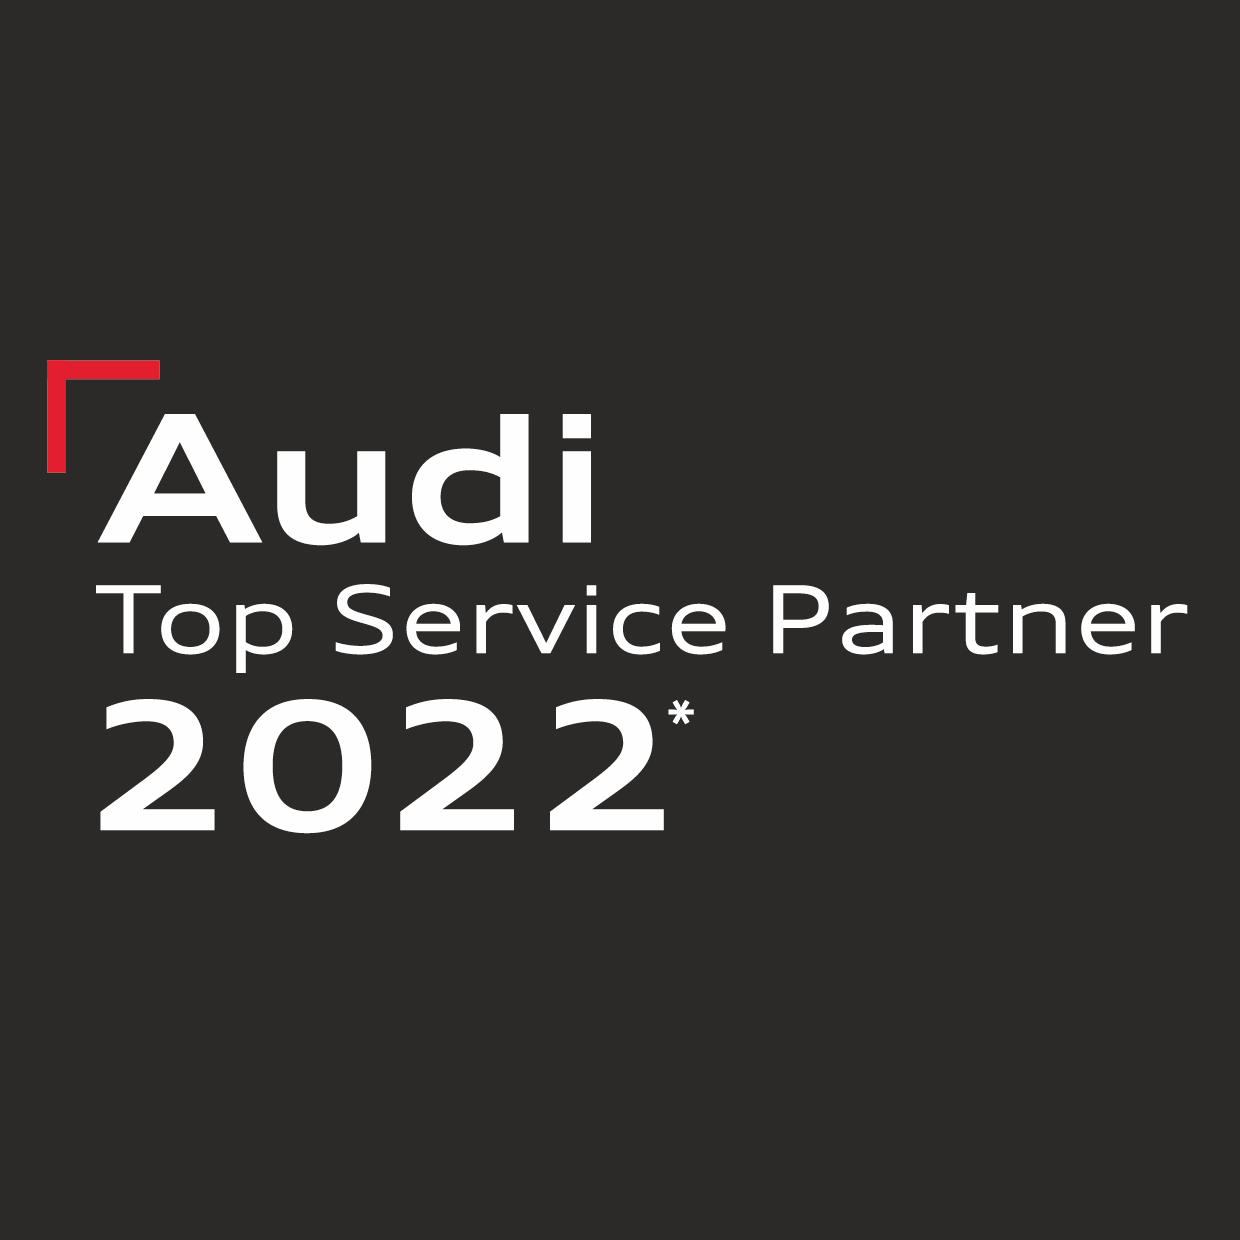 Logo von Audi für die "Audi Top Service Partner 2022" in weißer Schrift auf dunklem Hintergrund.